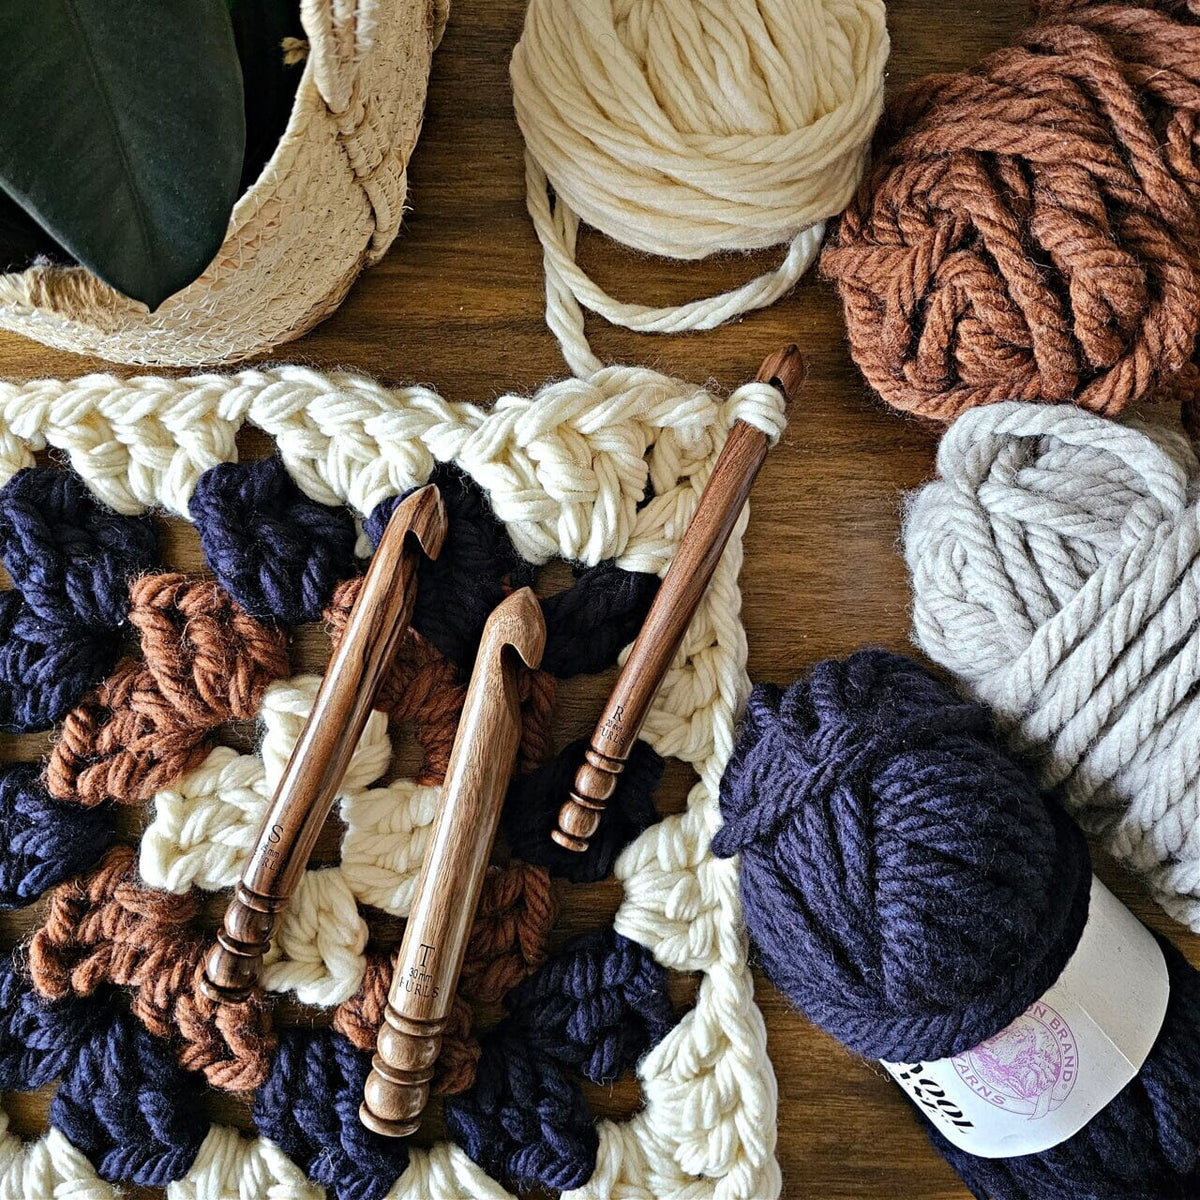 Bryspun and Laurel Hill Wood Crochet Hooks Nam OC F